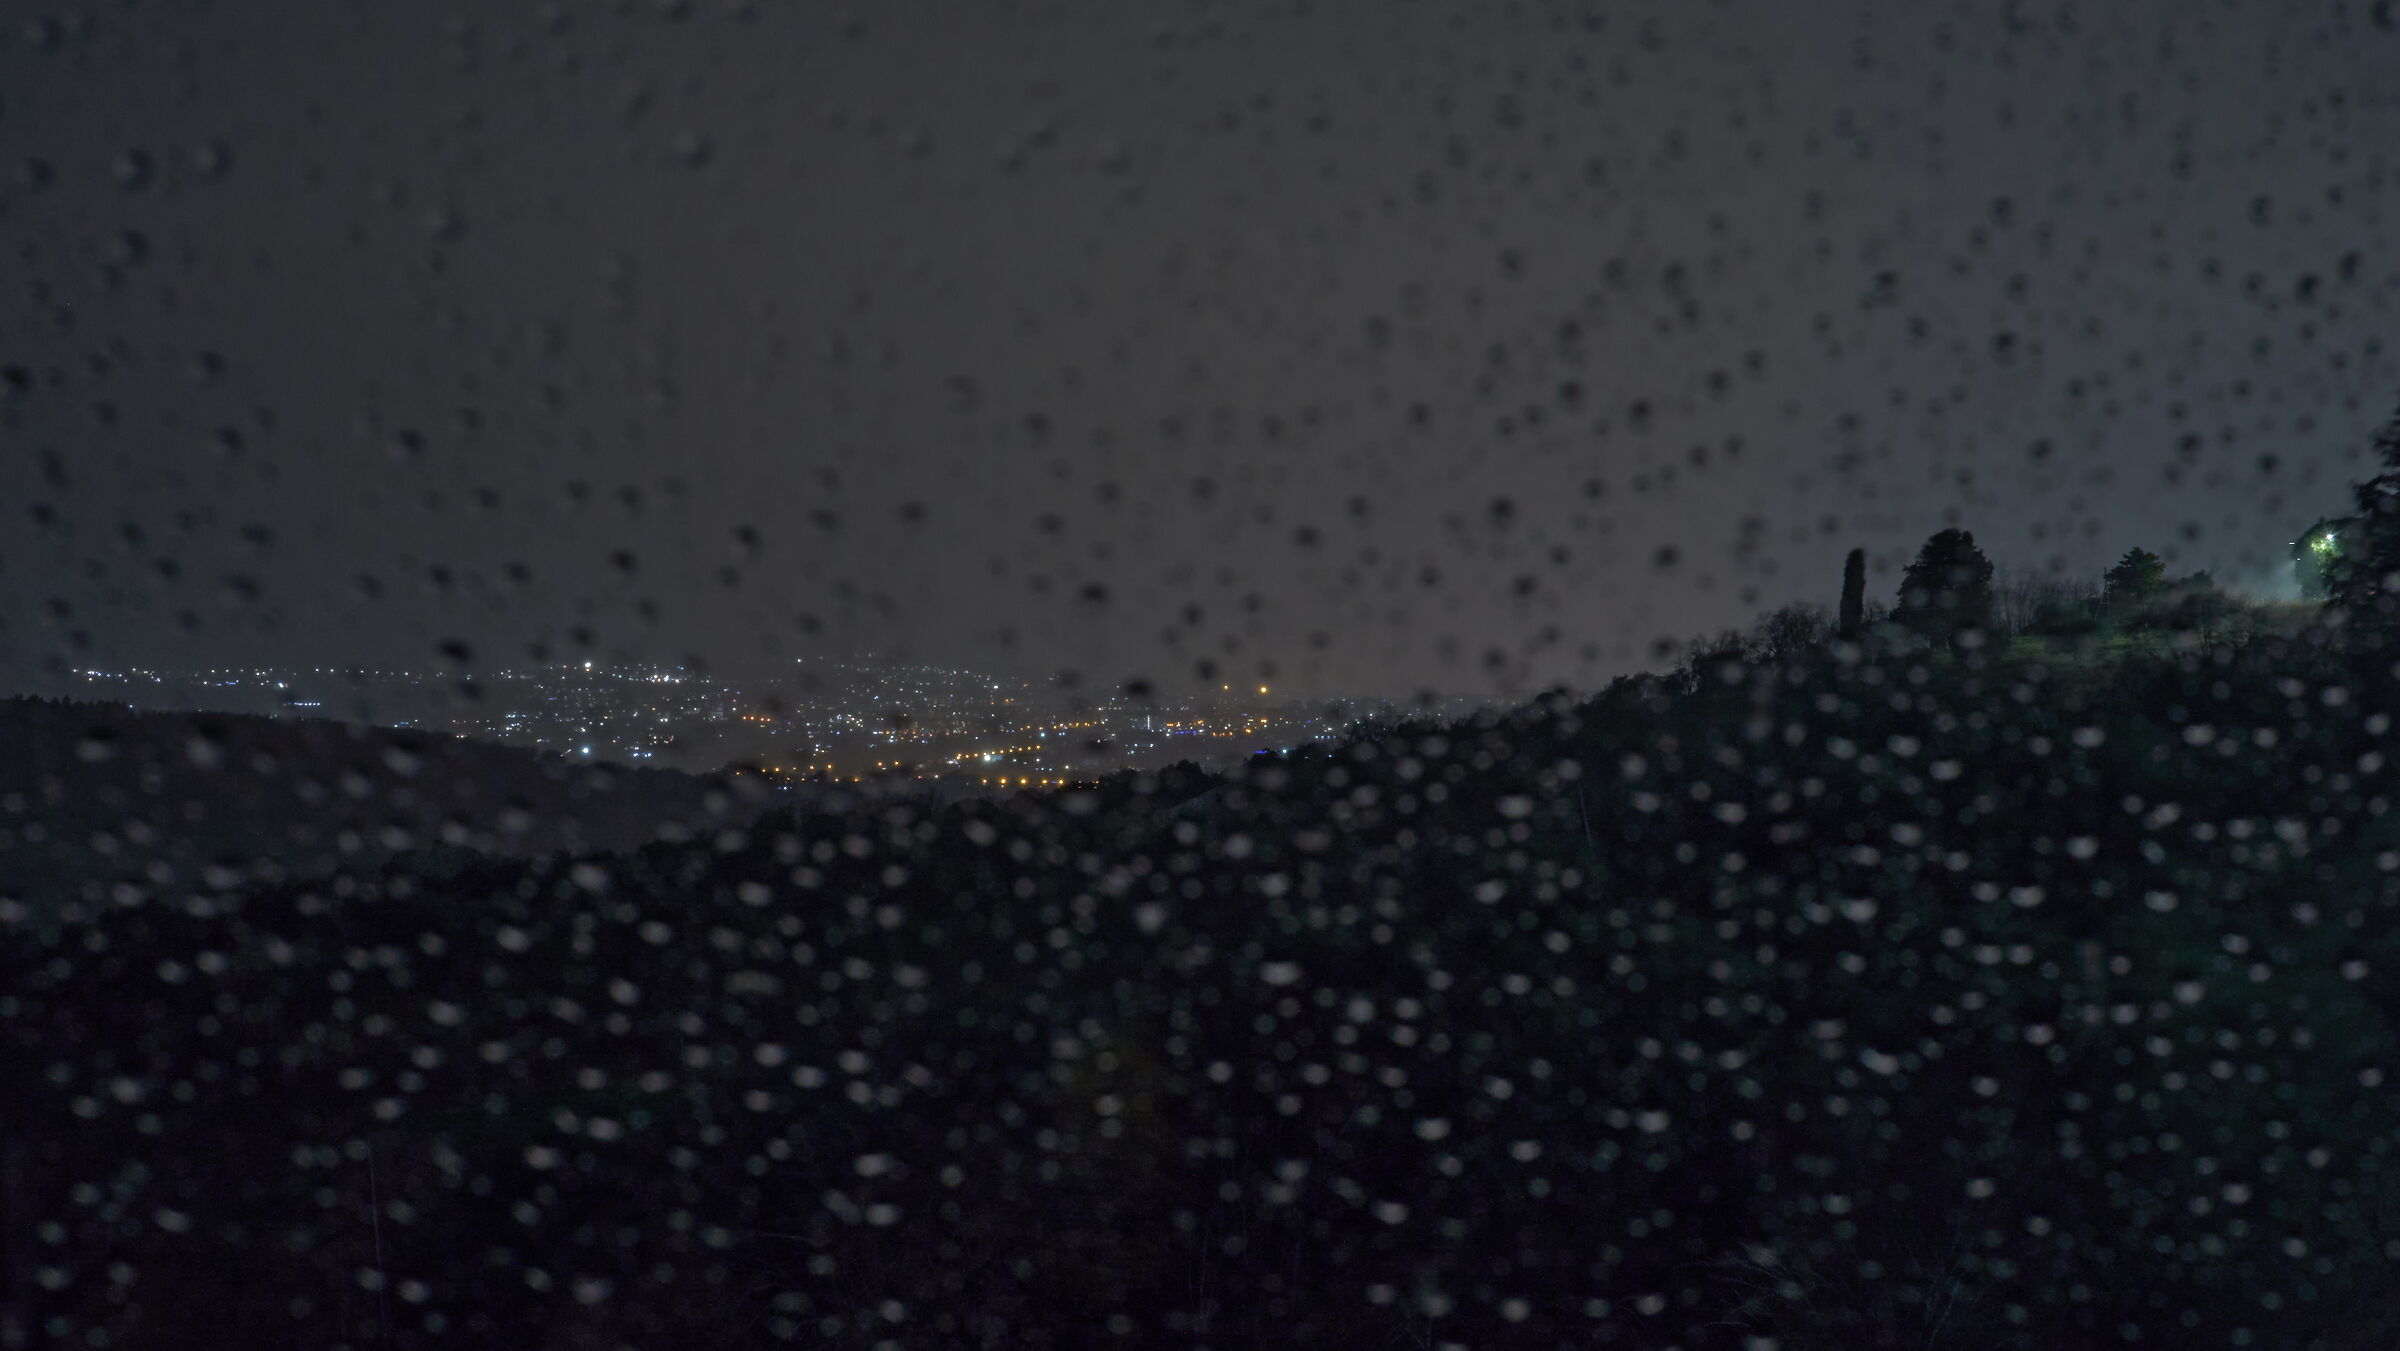 Rain on window 6...